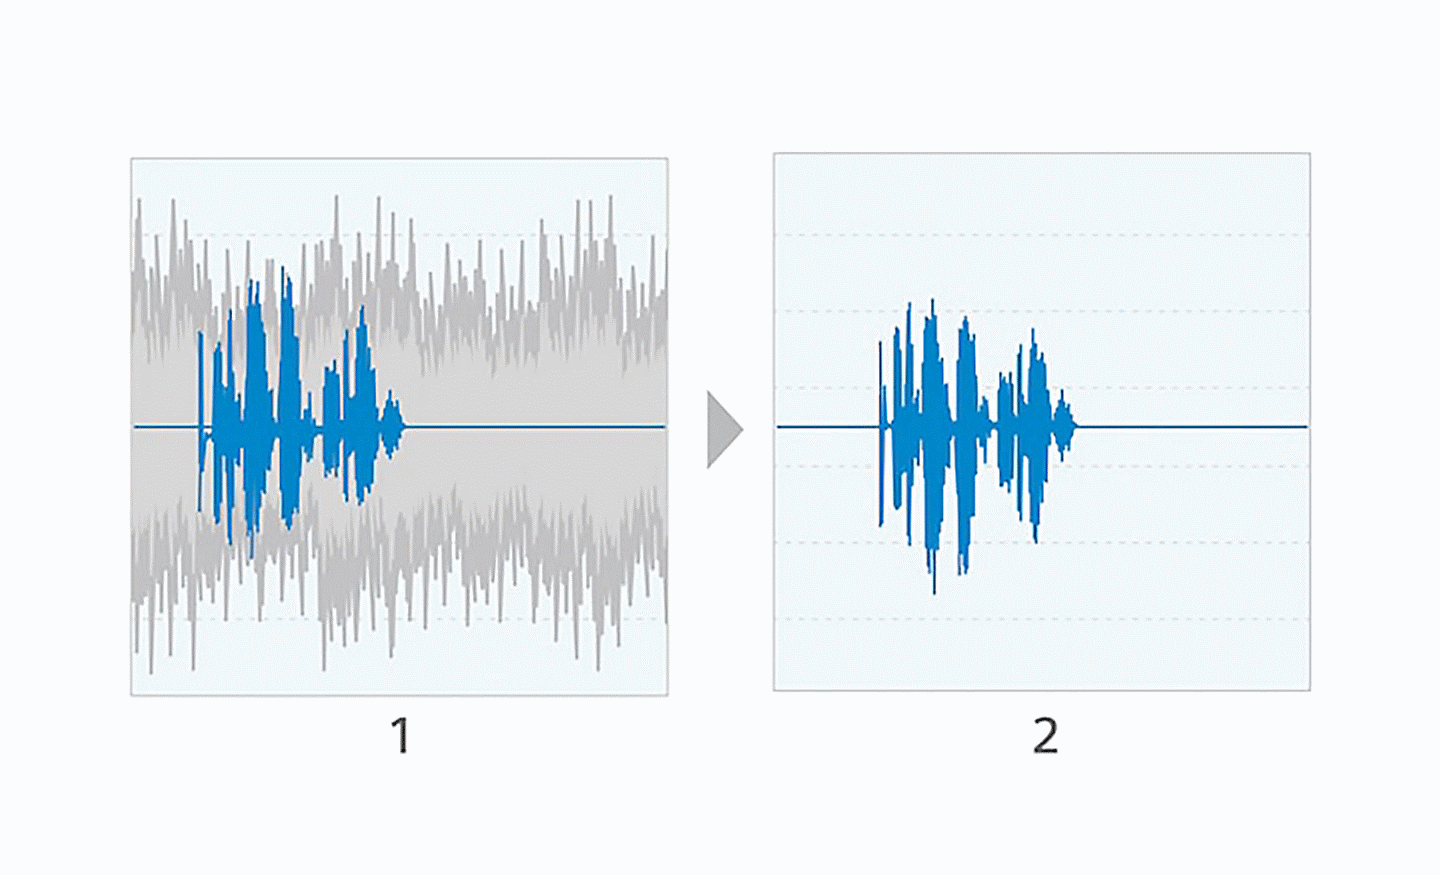 Image de deux schémas d'ondes sonores côte à côte, le schéma de gauche contenant des courbes bleues et grises, le schéma de droite ne contenant que des courbes bleues